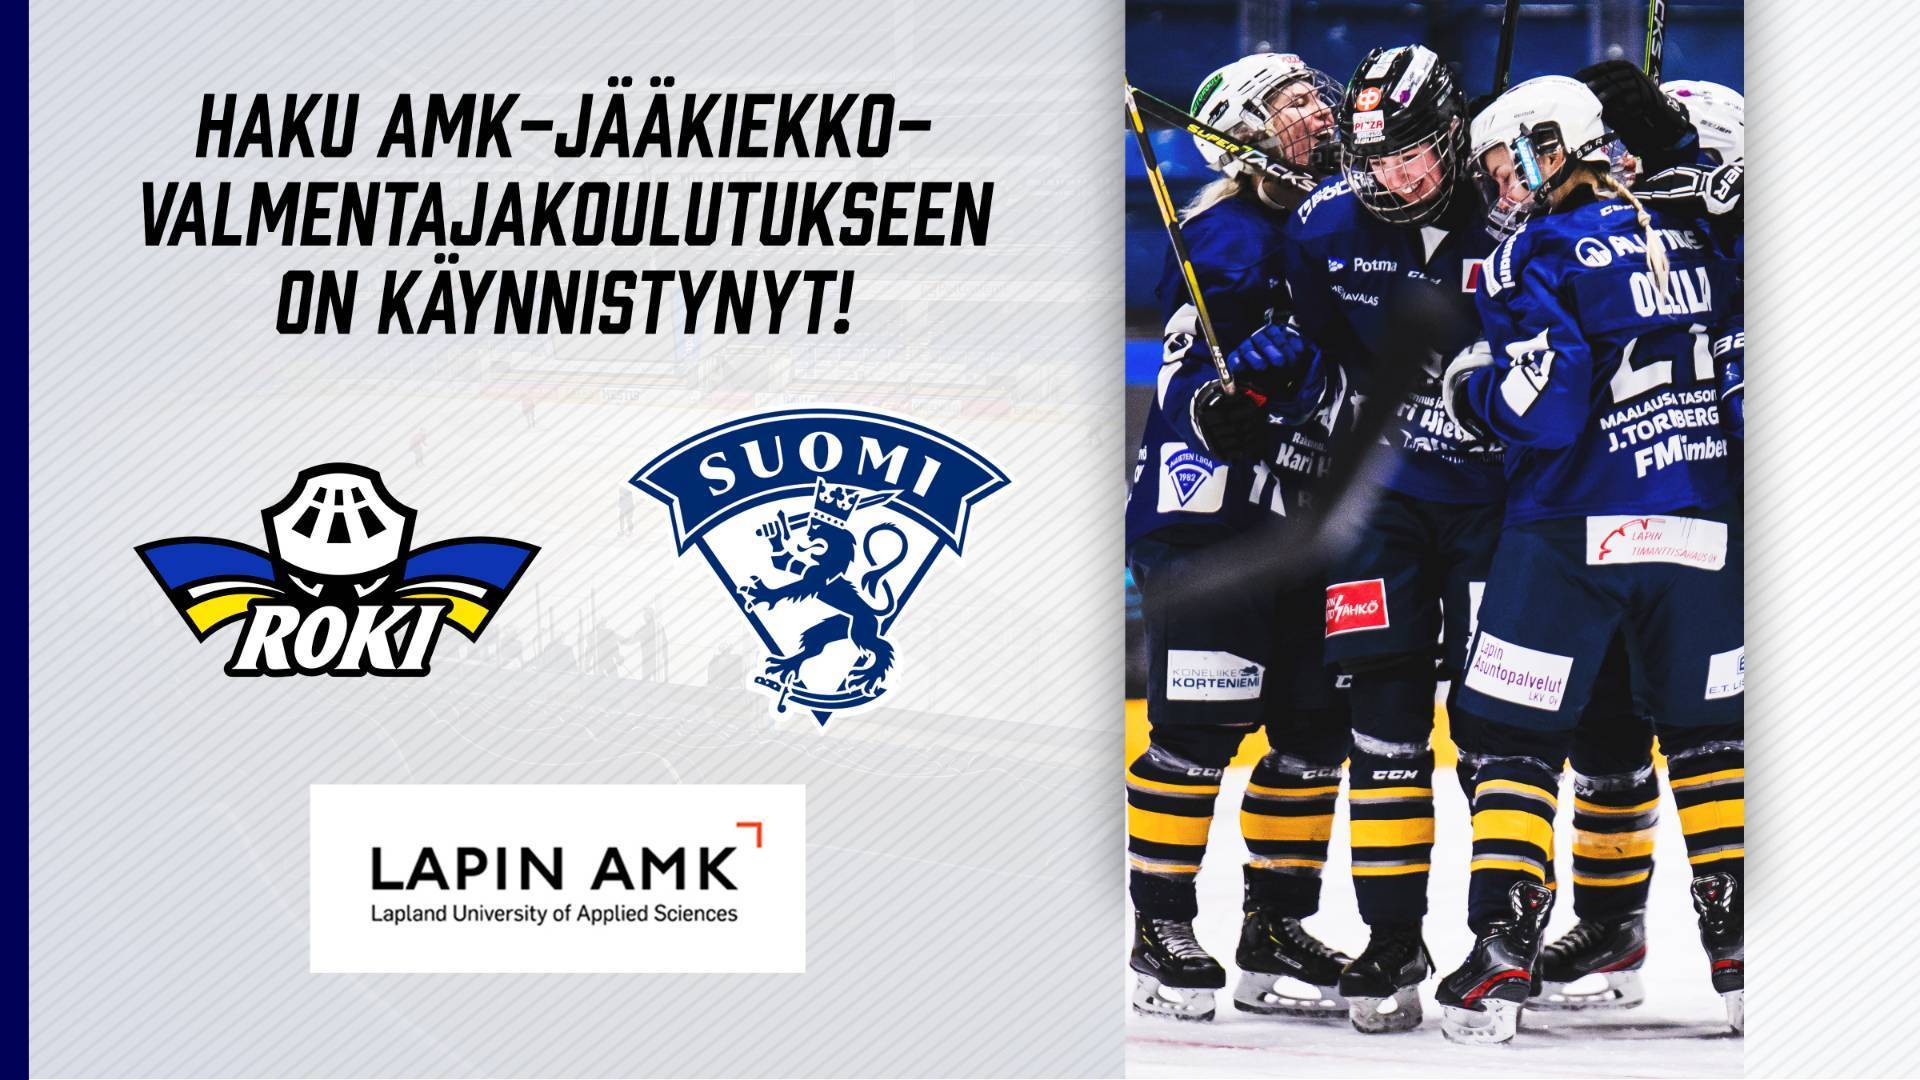 AMK-haku jääkiekkovalmentajakoulutukseen käynnissä - naisten liigajoukkueeseen etsitään valmentajia